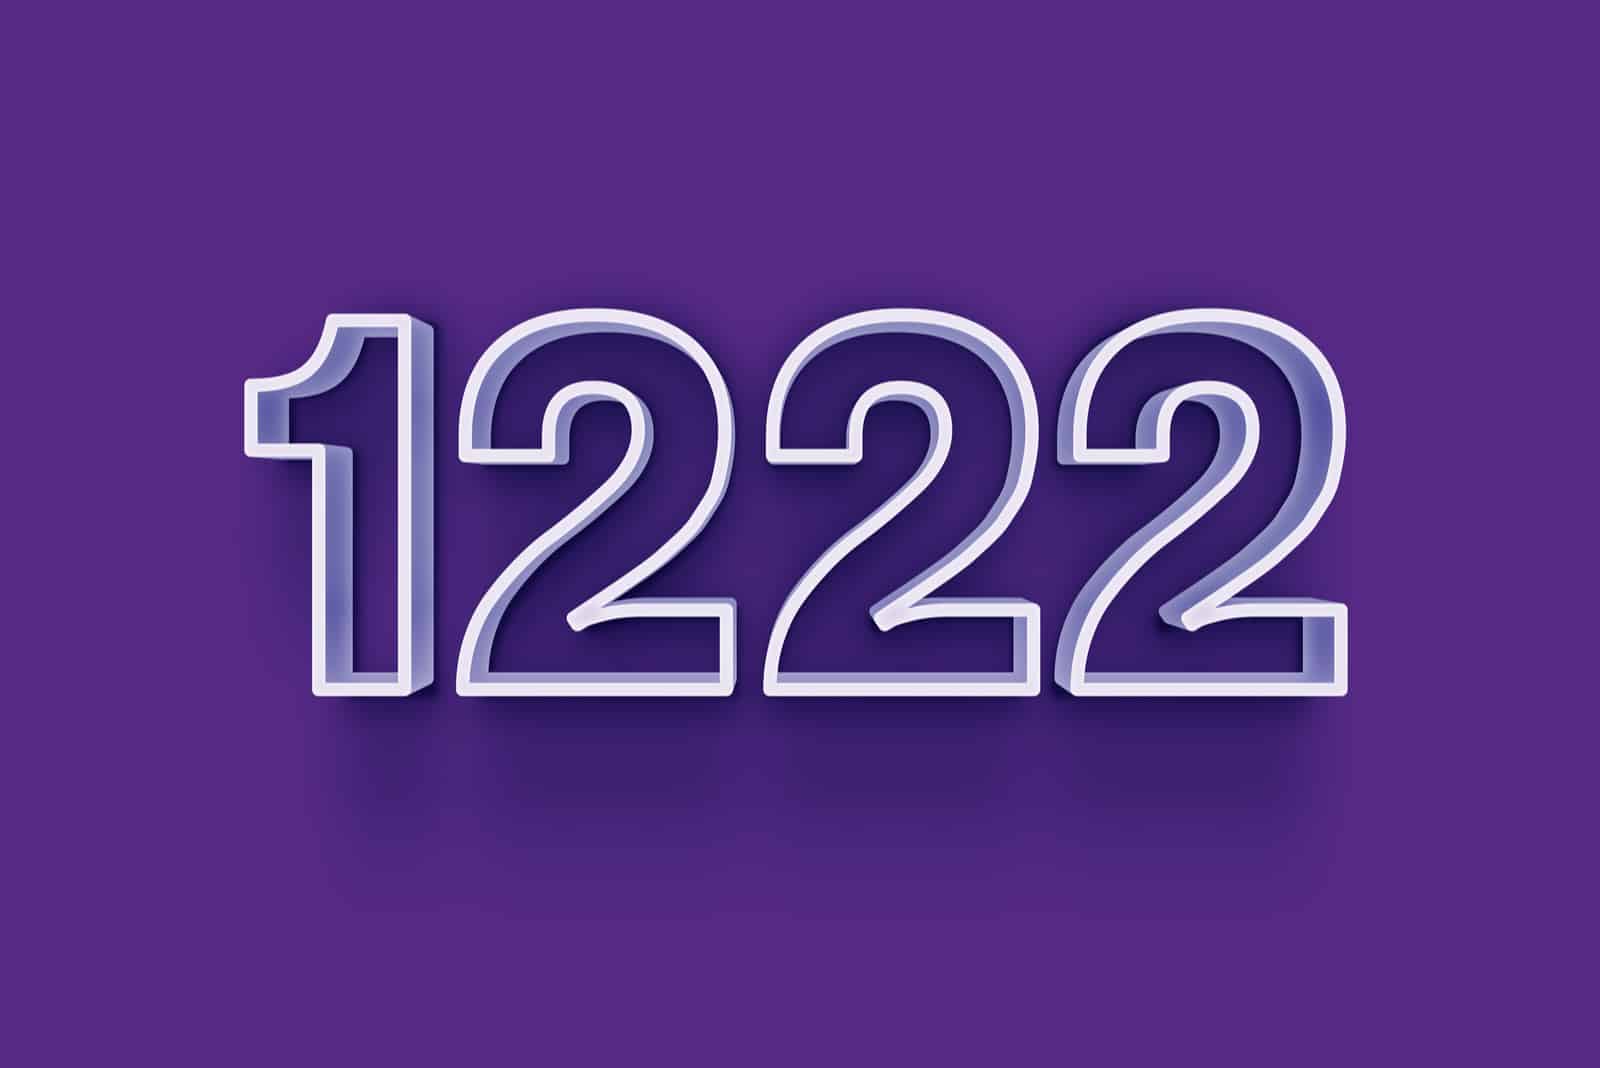 Engelszahl 1222 und ihre Bedeutung: Warum siehst du überall diese Zahl?